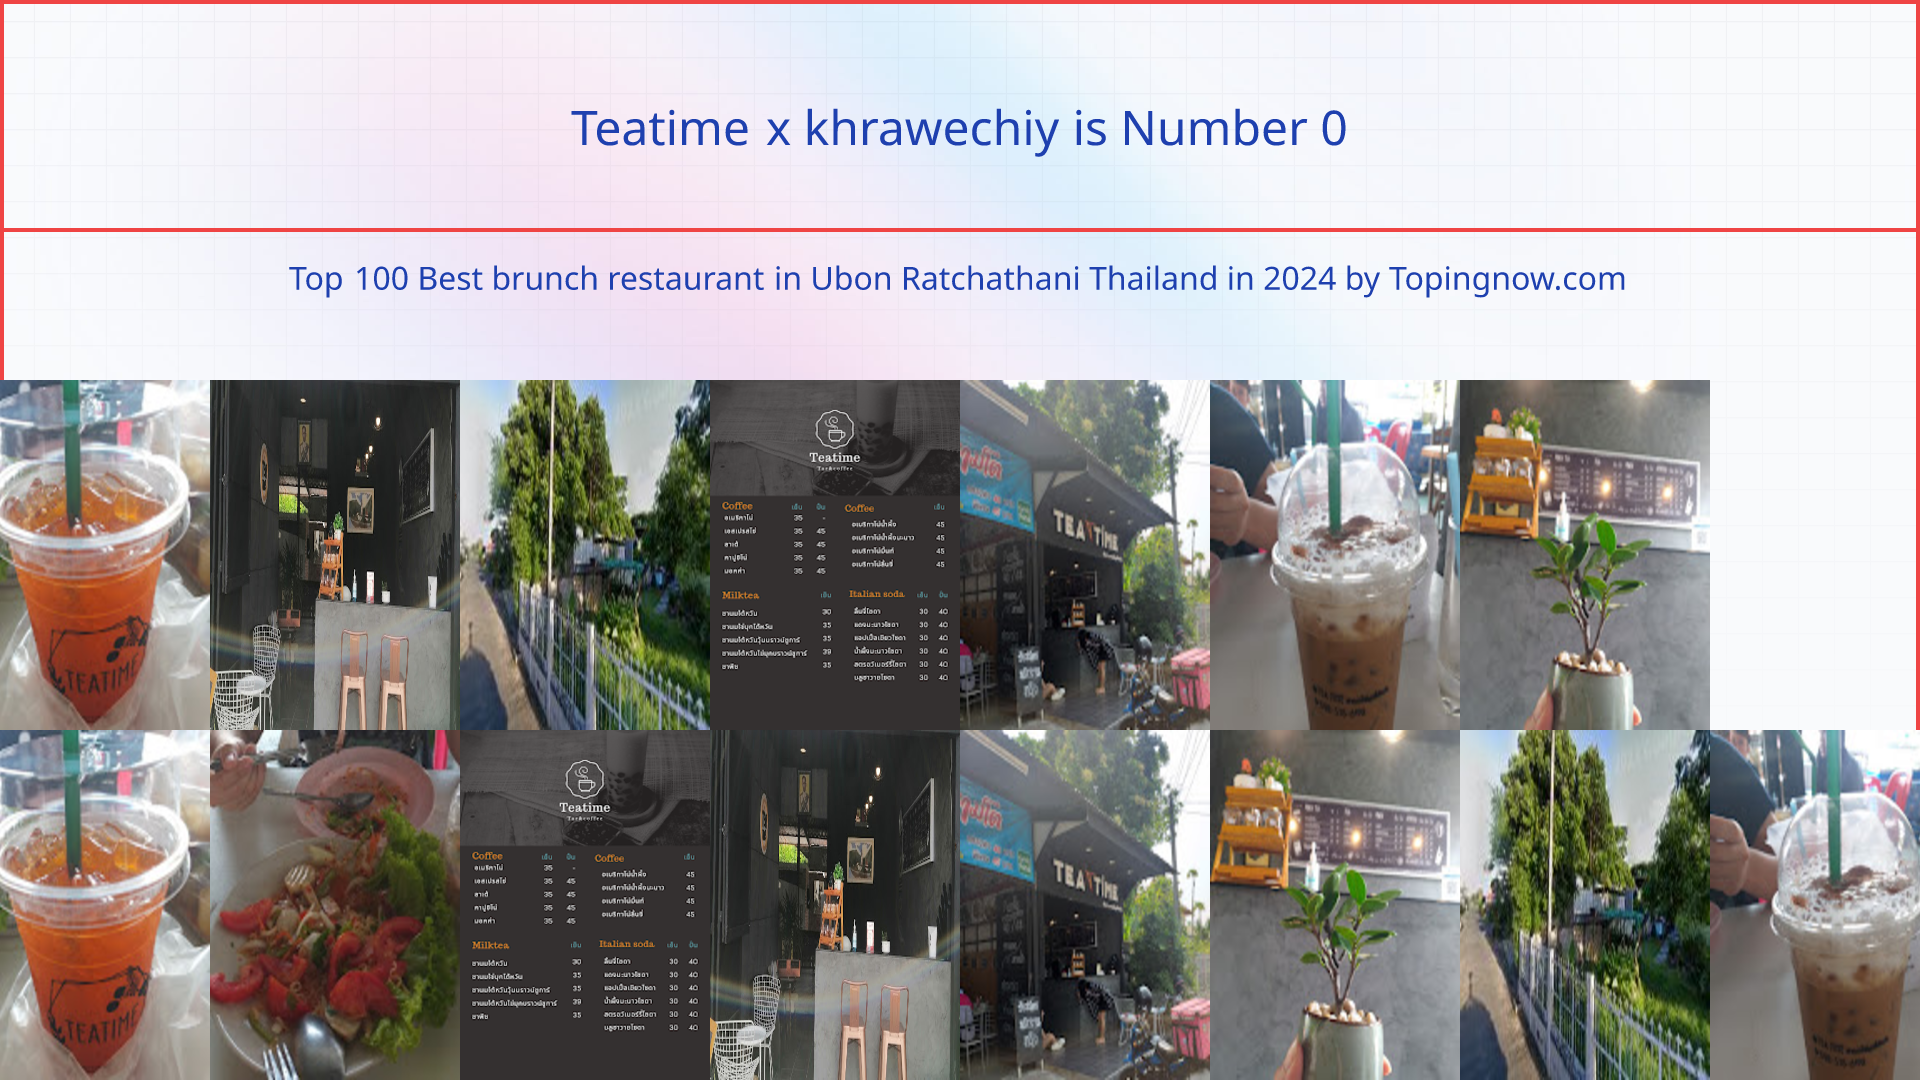 Teatime  x  khrawechiy: Top 100 Best brunch restaurant in Ubon Ratchathani Thailand in 2024